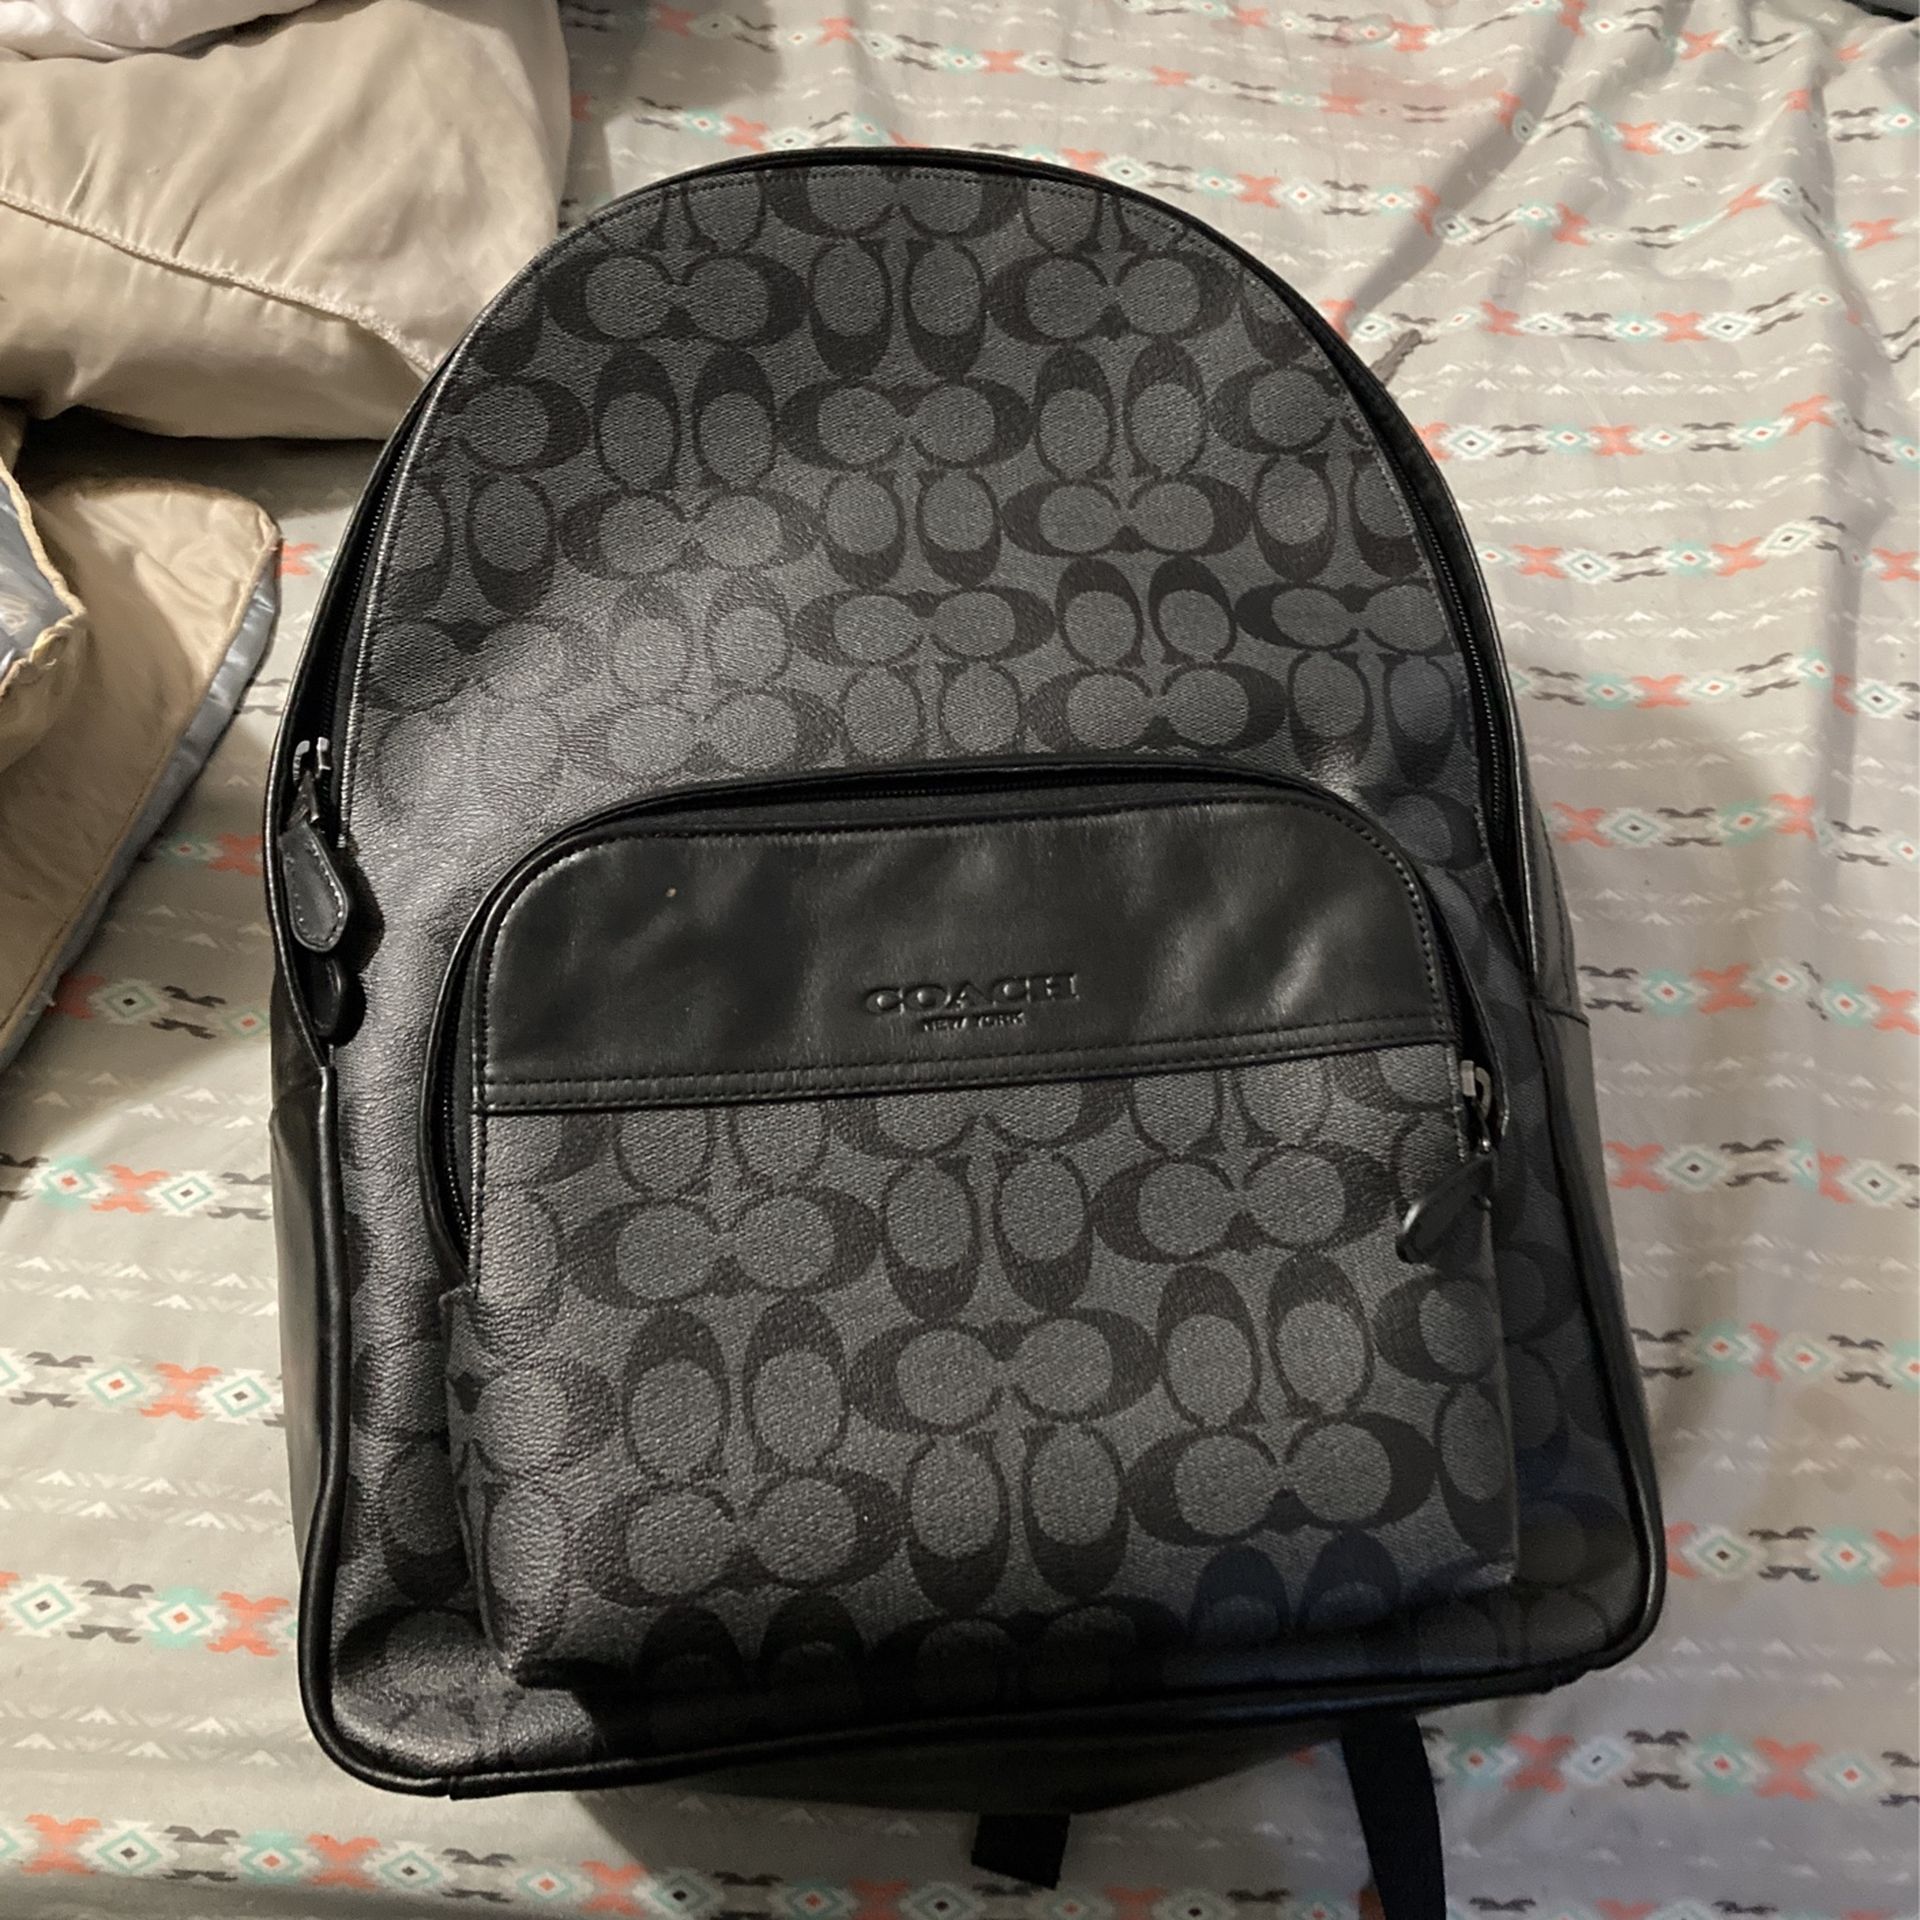 Coach backpack